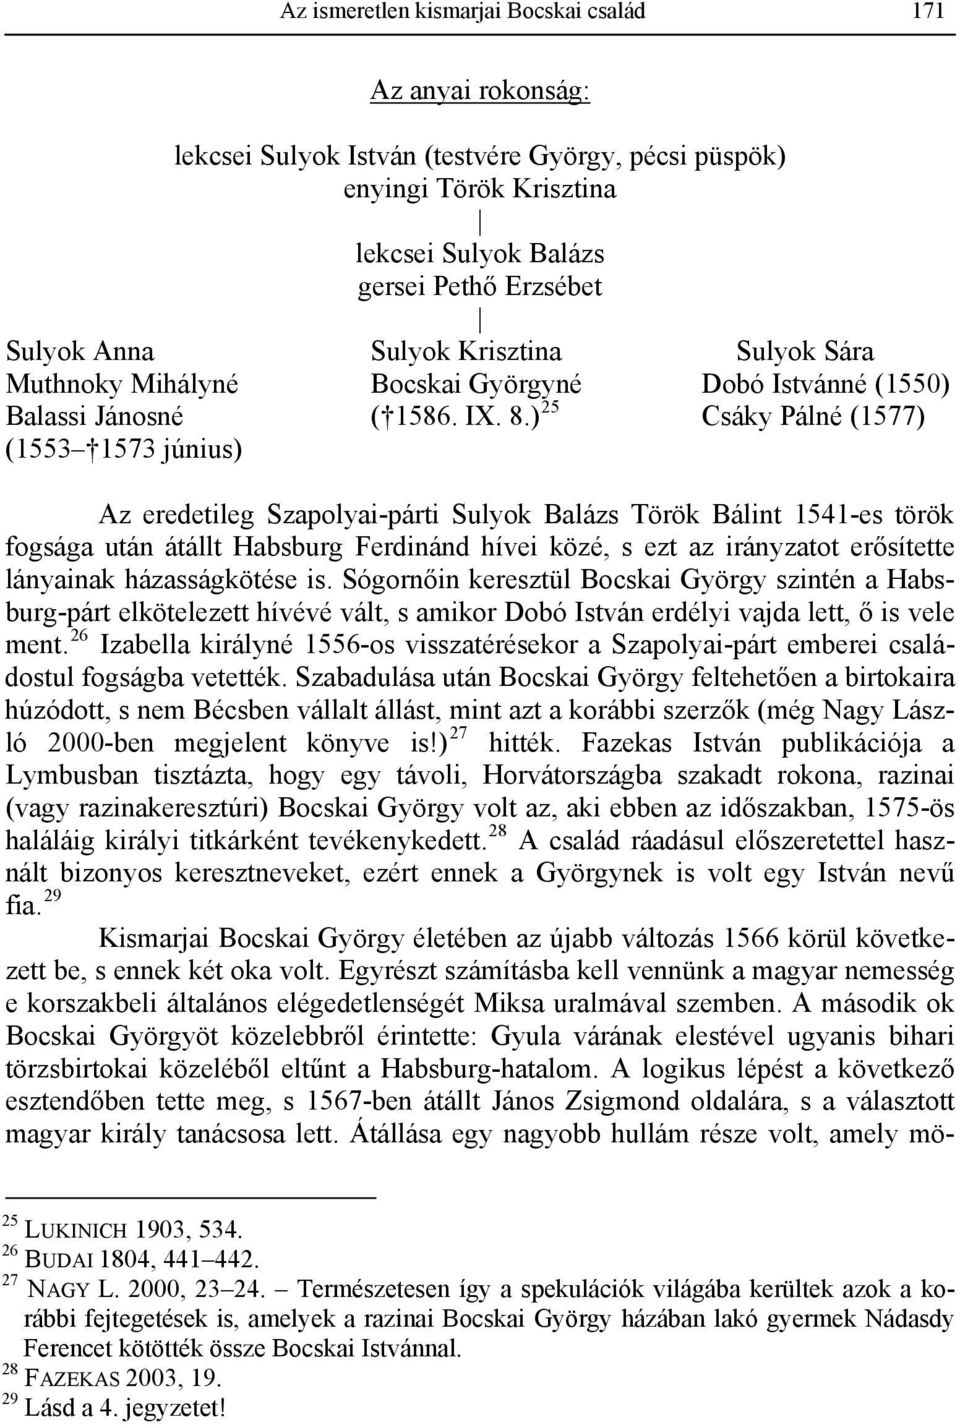 ) 25 Csáky Pálné (1577) (1553 1573 június) Az eredetileg Szapolyai-párti Sulyok Balázs Török Bálint 1541-es török fogsága után átállt Habsburg Ferdinánd hívei közé, s ezt az irányzatot erősítette